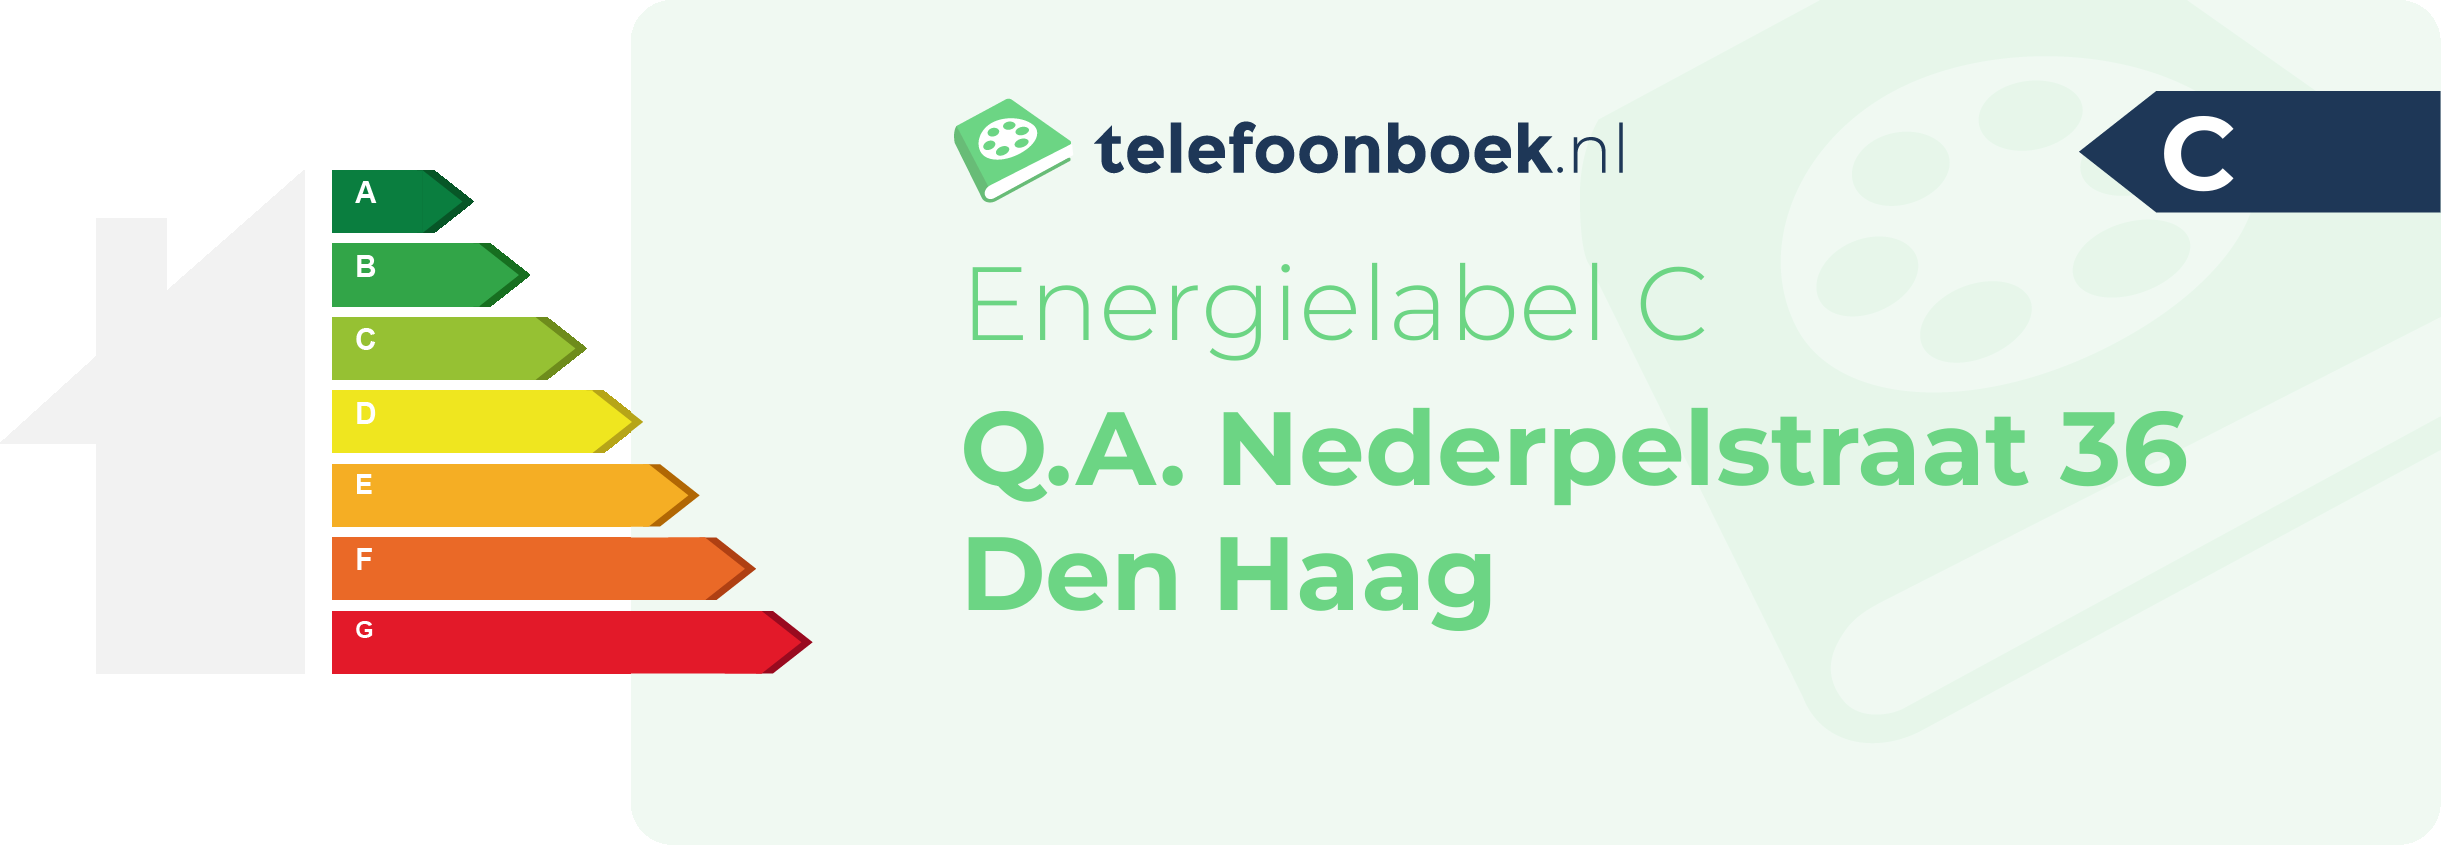 Energielabel Q.A. Nederpelstraat 36 Den Haag